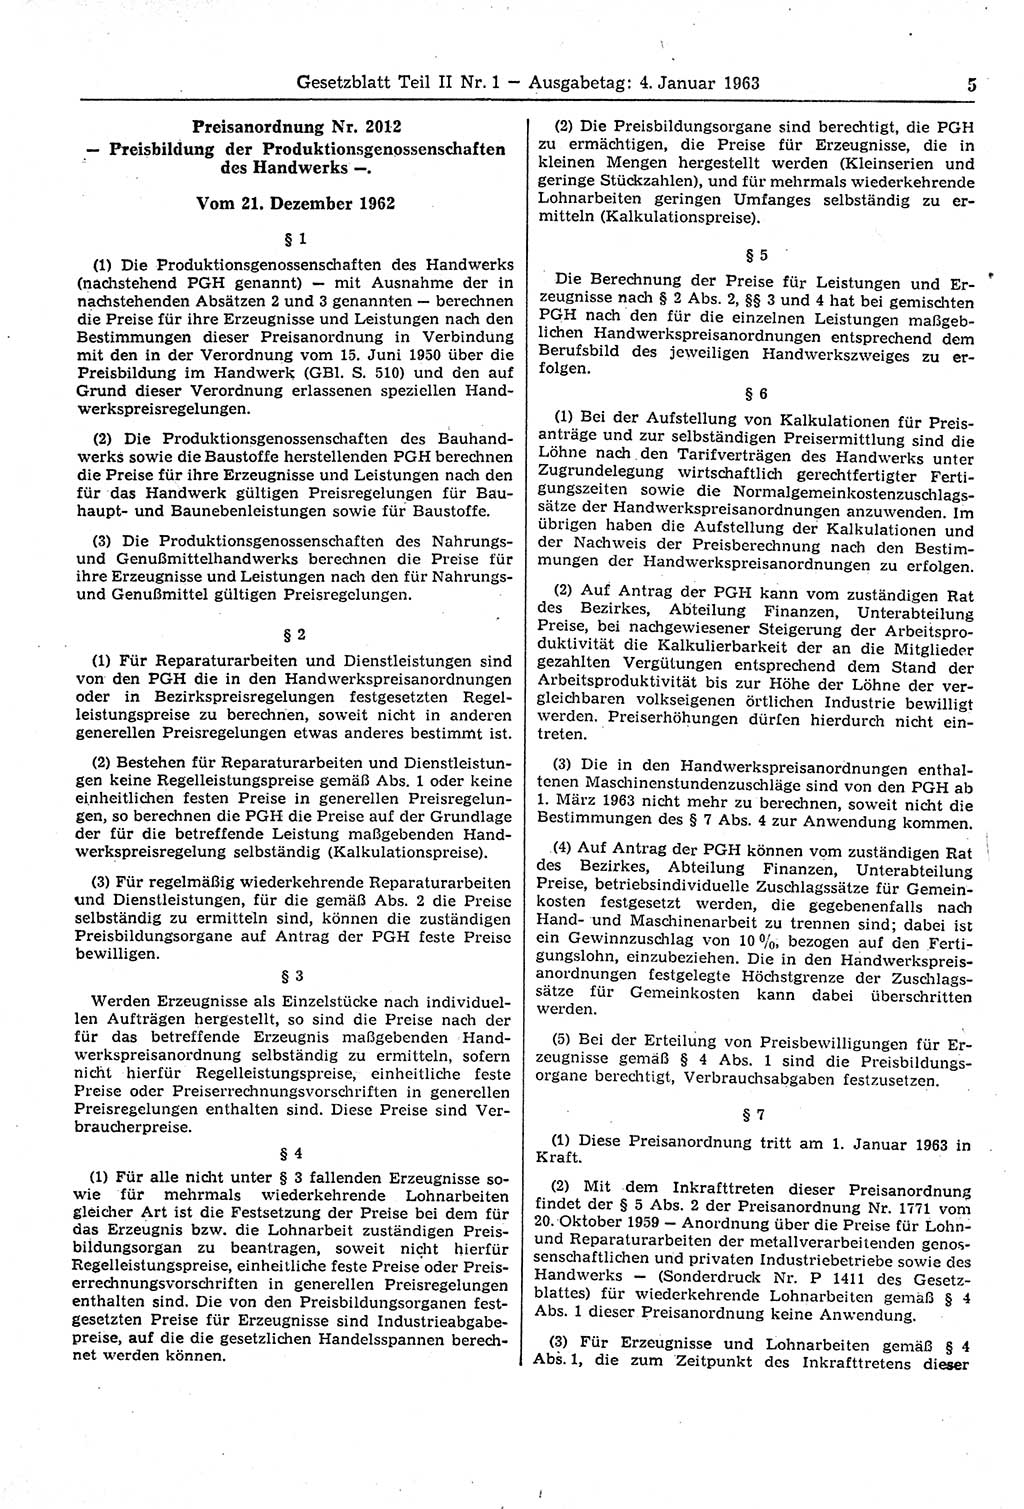 Gesetzblatt (GBl.) der Deutschen Demokratischen Republik (DDR) Teil ⅠⅠ 1963, Seite 5 (GBl. DDR ⅠⅠ 1963, S. 5)